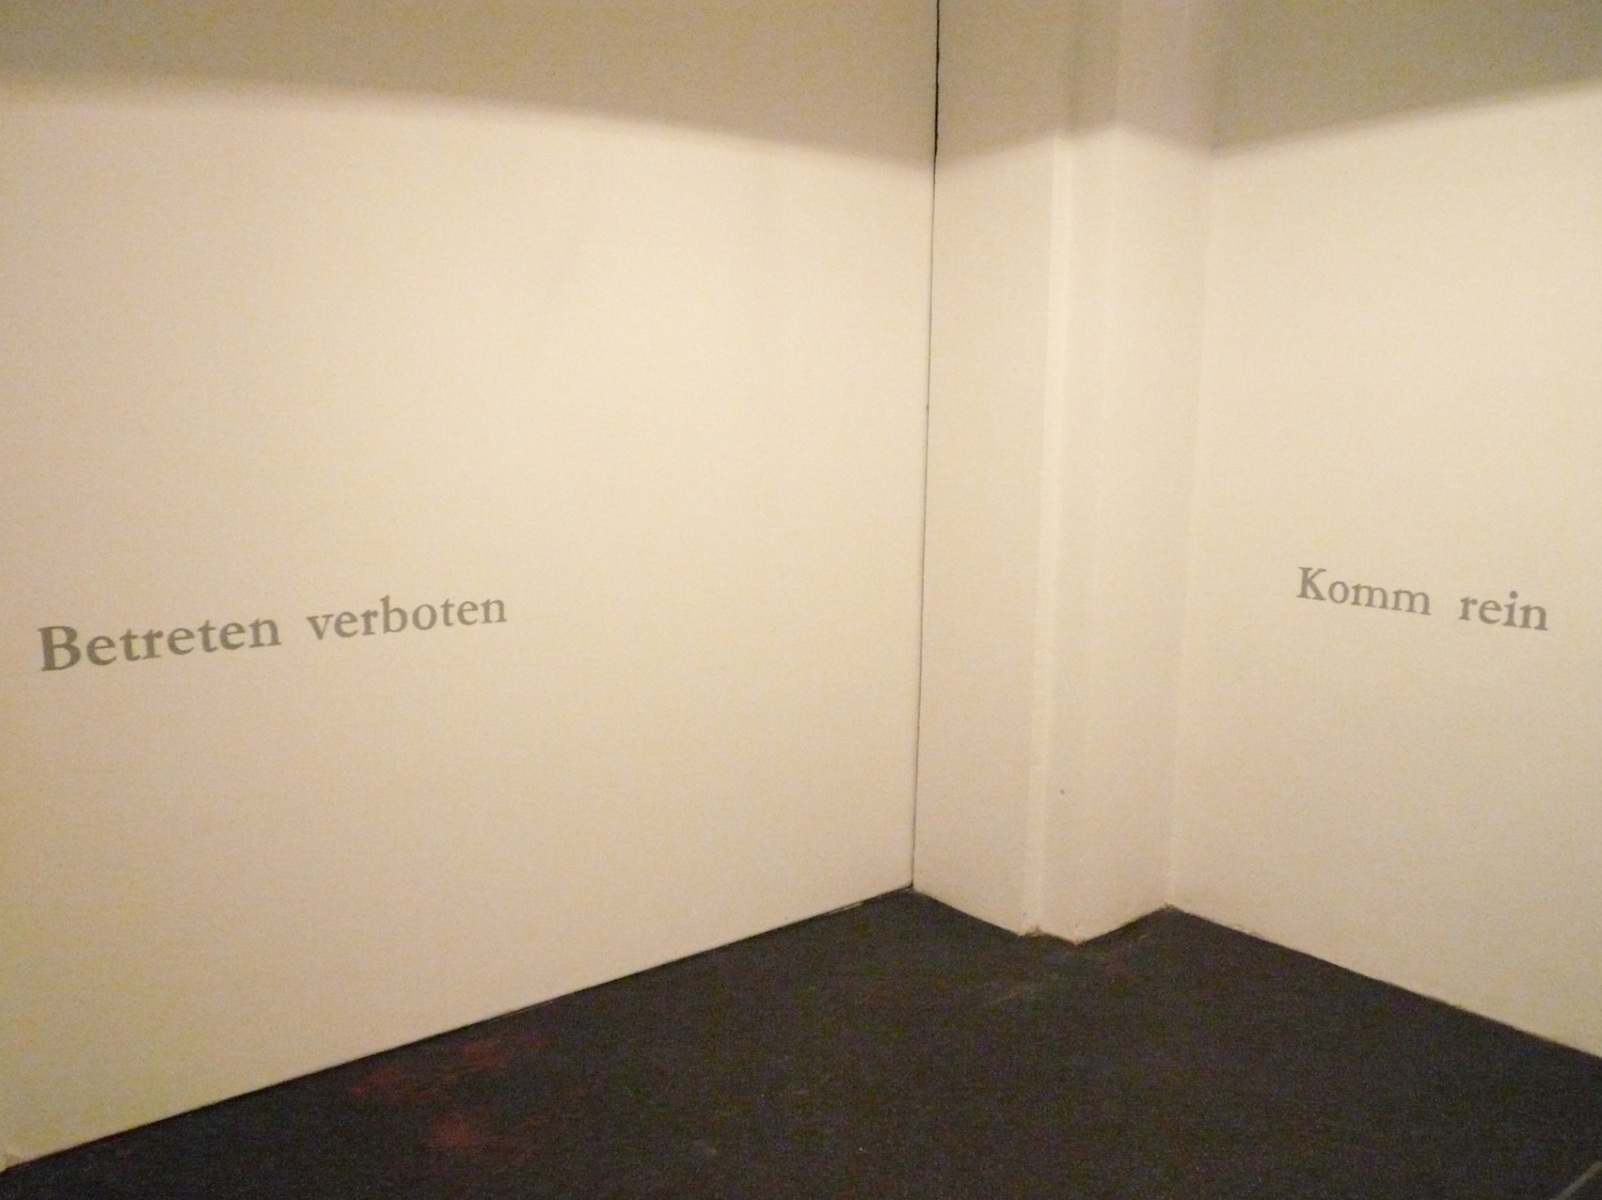 Constanze Böckmann: A Place To Be - Betreten verboten/Komm rein - Schrift und Audio -2015